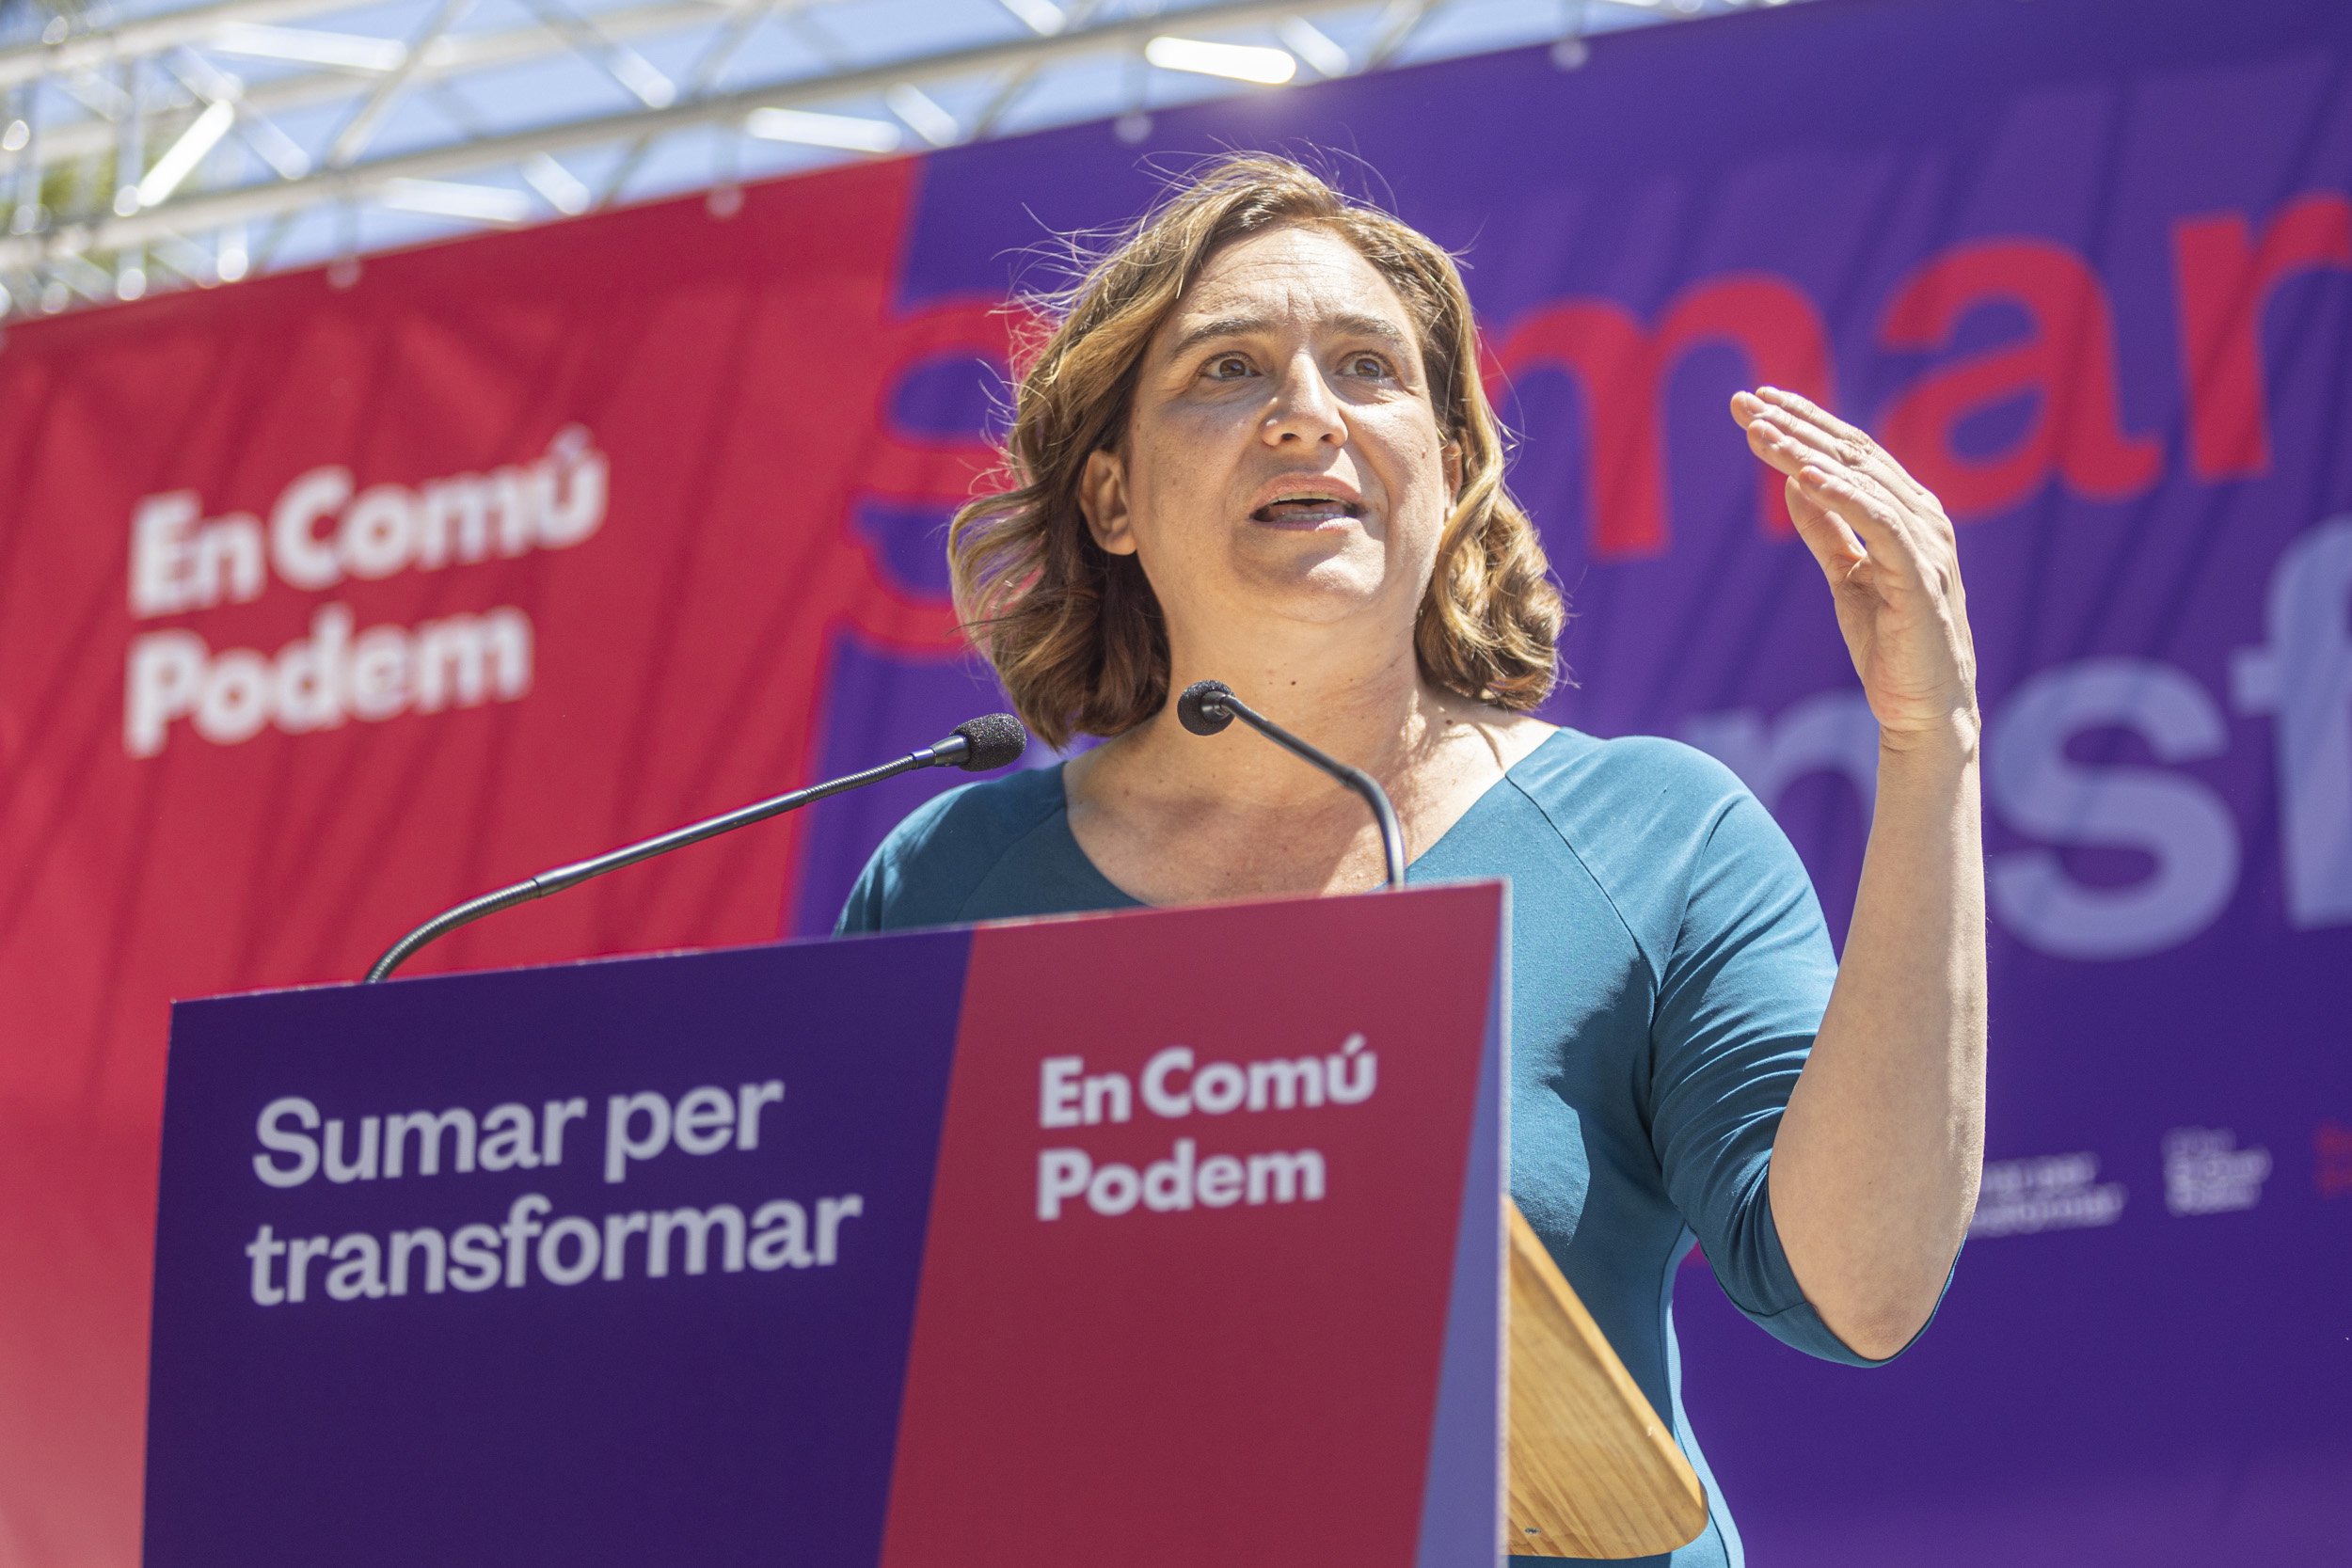 El 68% dels barcelonins considera que Ada Colau ha de deixar de ser alcaldessa